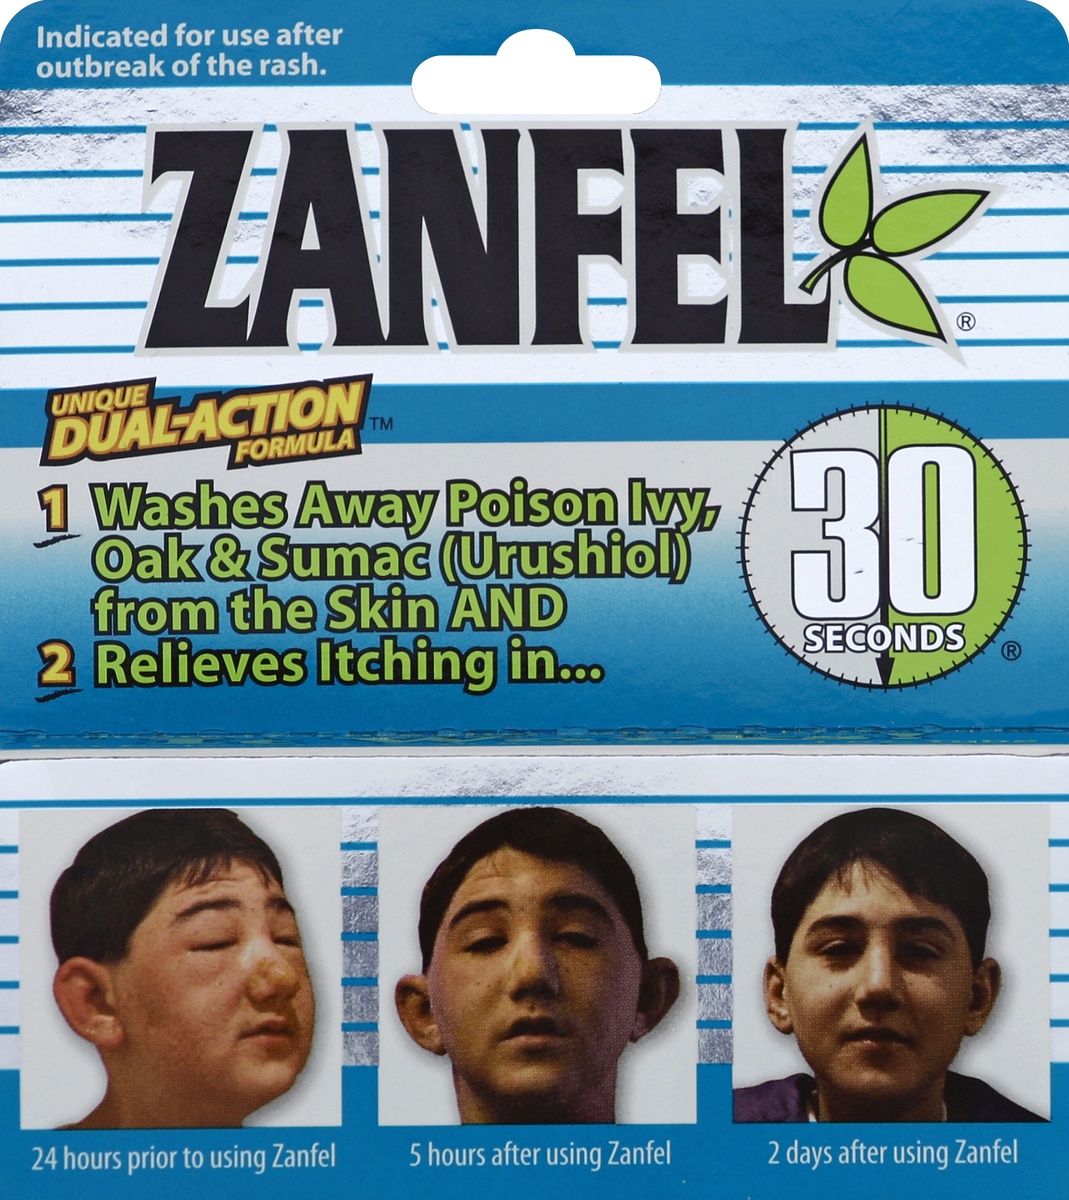 slide 3 of 5, Zanfel Unique Dual-Action Formula Poison Ivy Wash 1 oz, 1 oz